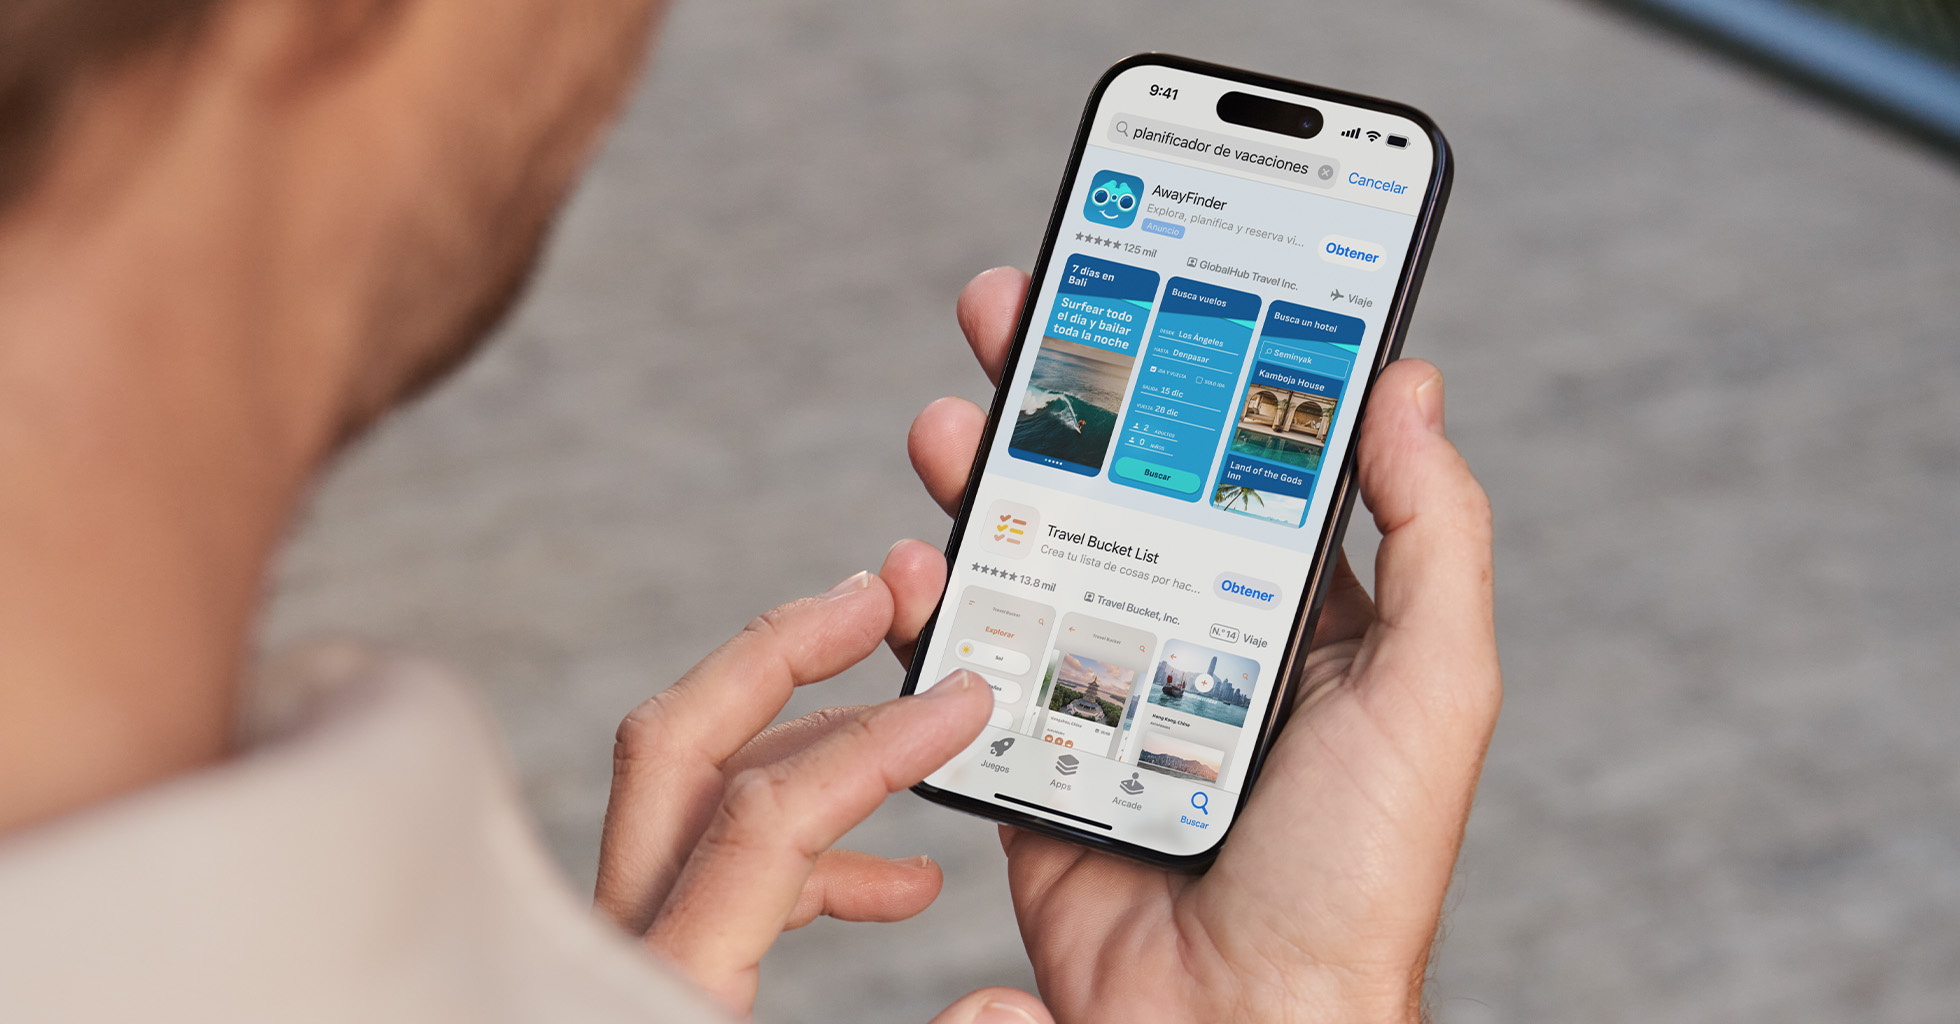 Una persona busca «planificador de vacaciones» en el App Store y AwayFinder aparece en la parte superior de los resultados de búsqueda.